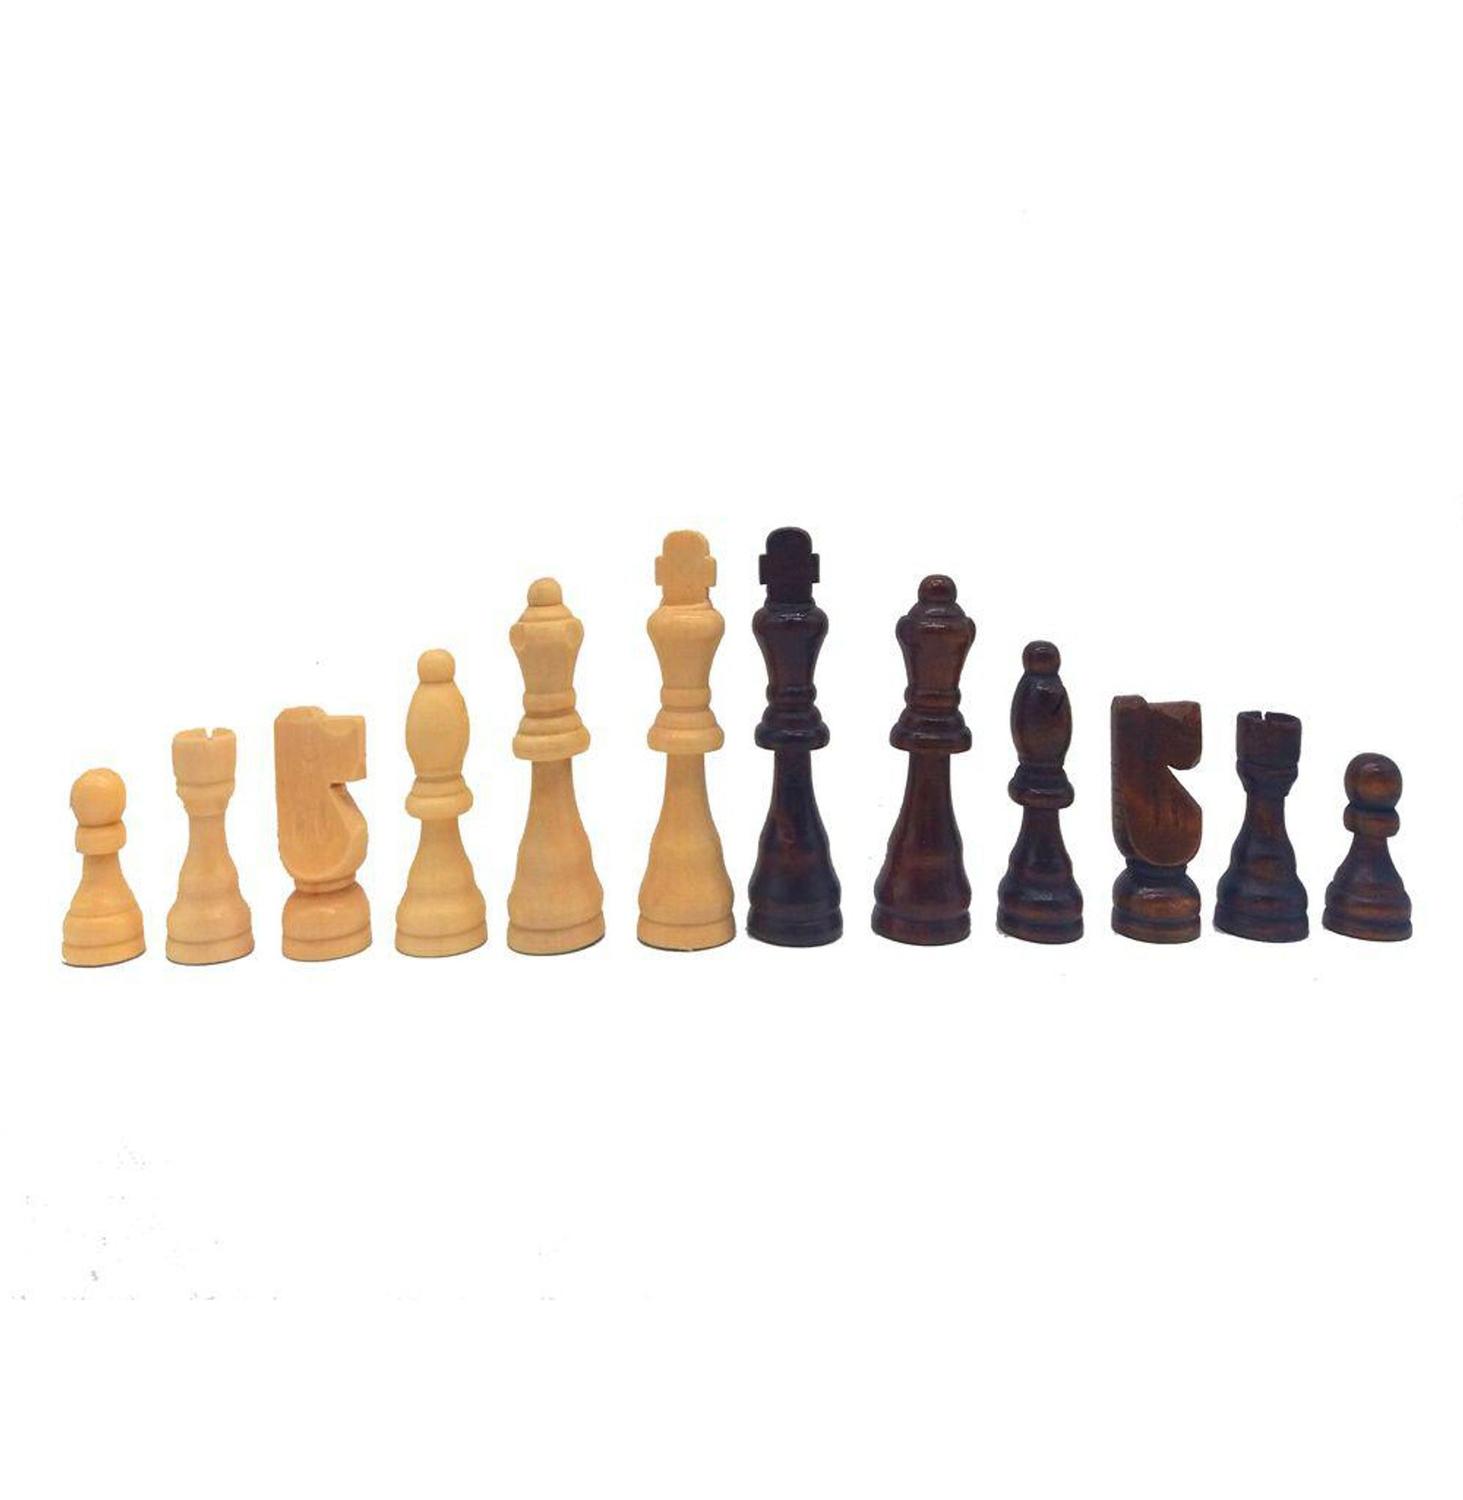 Jogo de Xadrez tabuleiro e peças madeira oficial - Hoyle - Jogo de